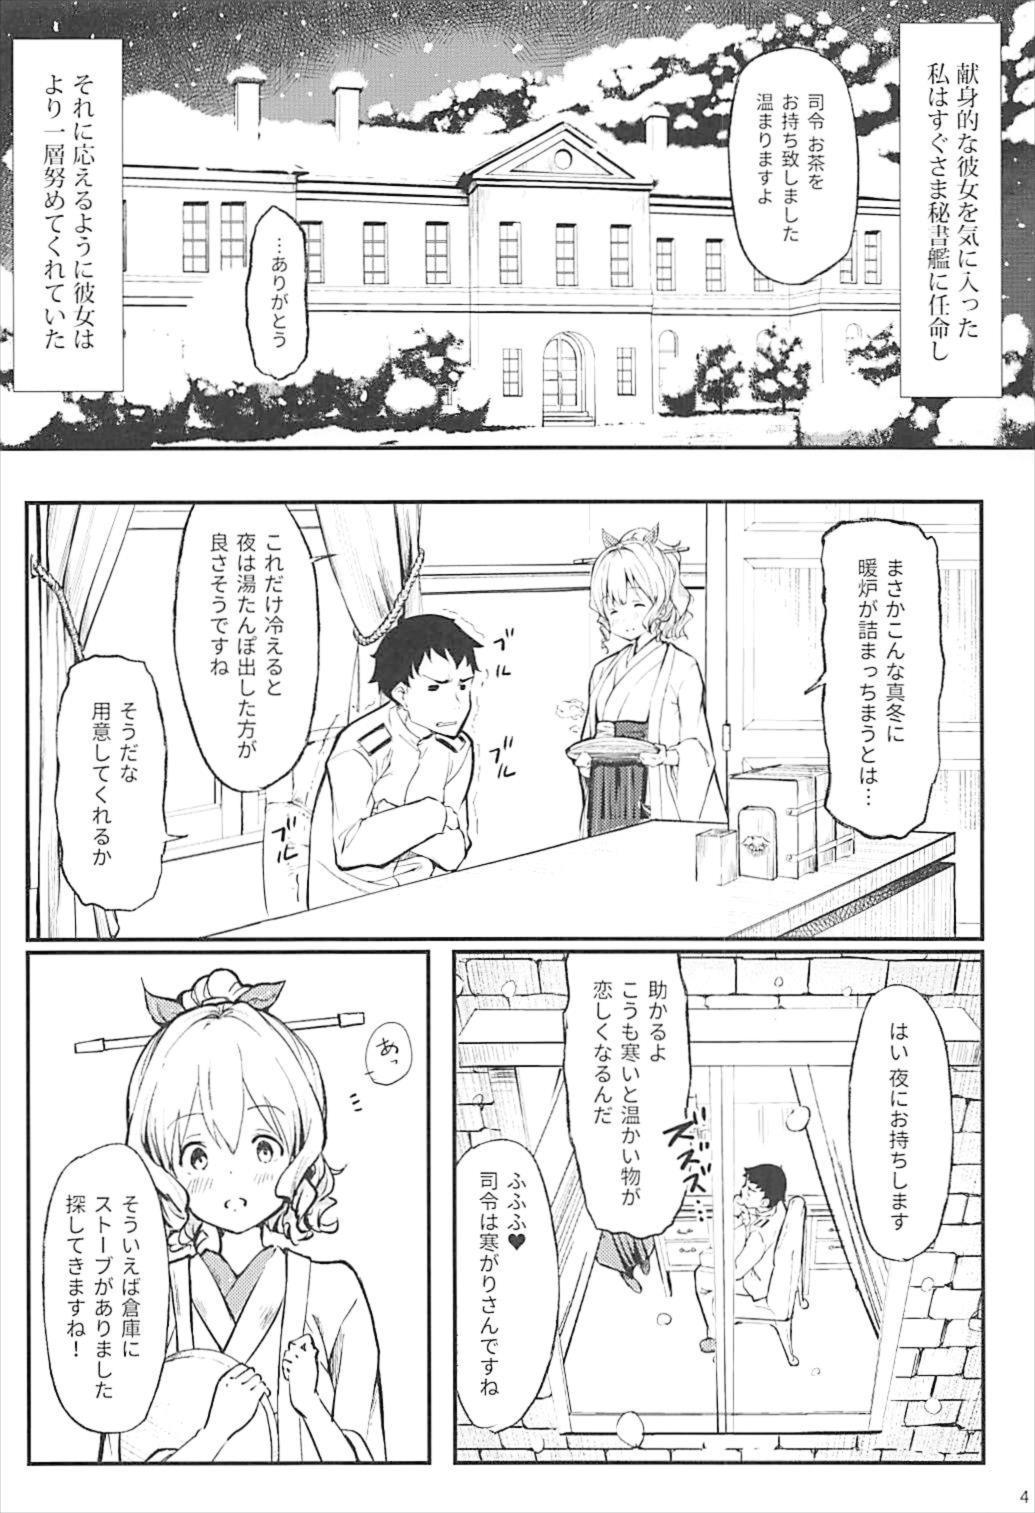 Chacal Hatakaze ga Tsutome sasete Itadakimasu - Kantai collection Cavalgando - Page 5